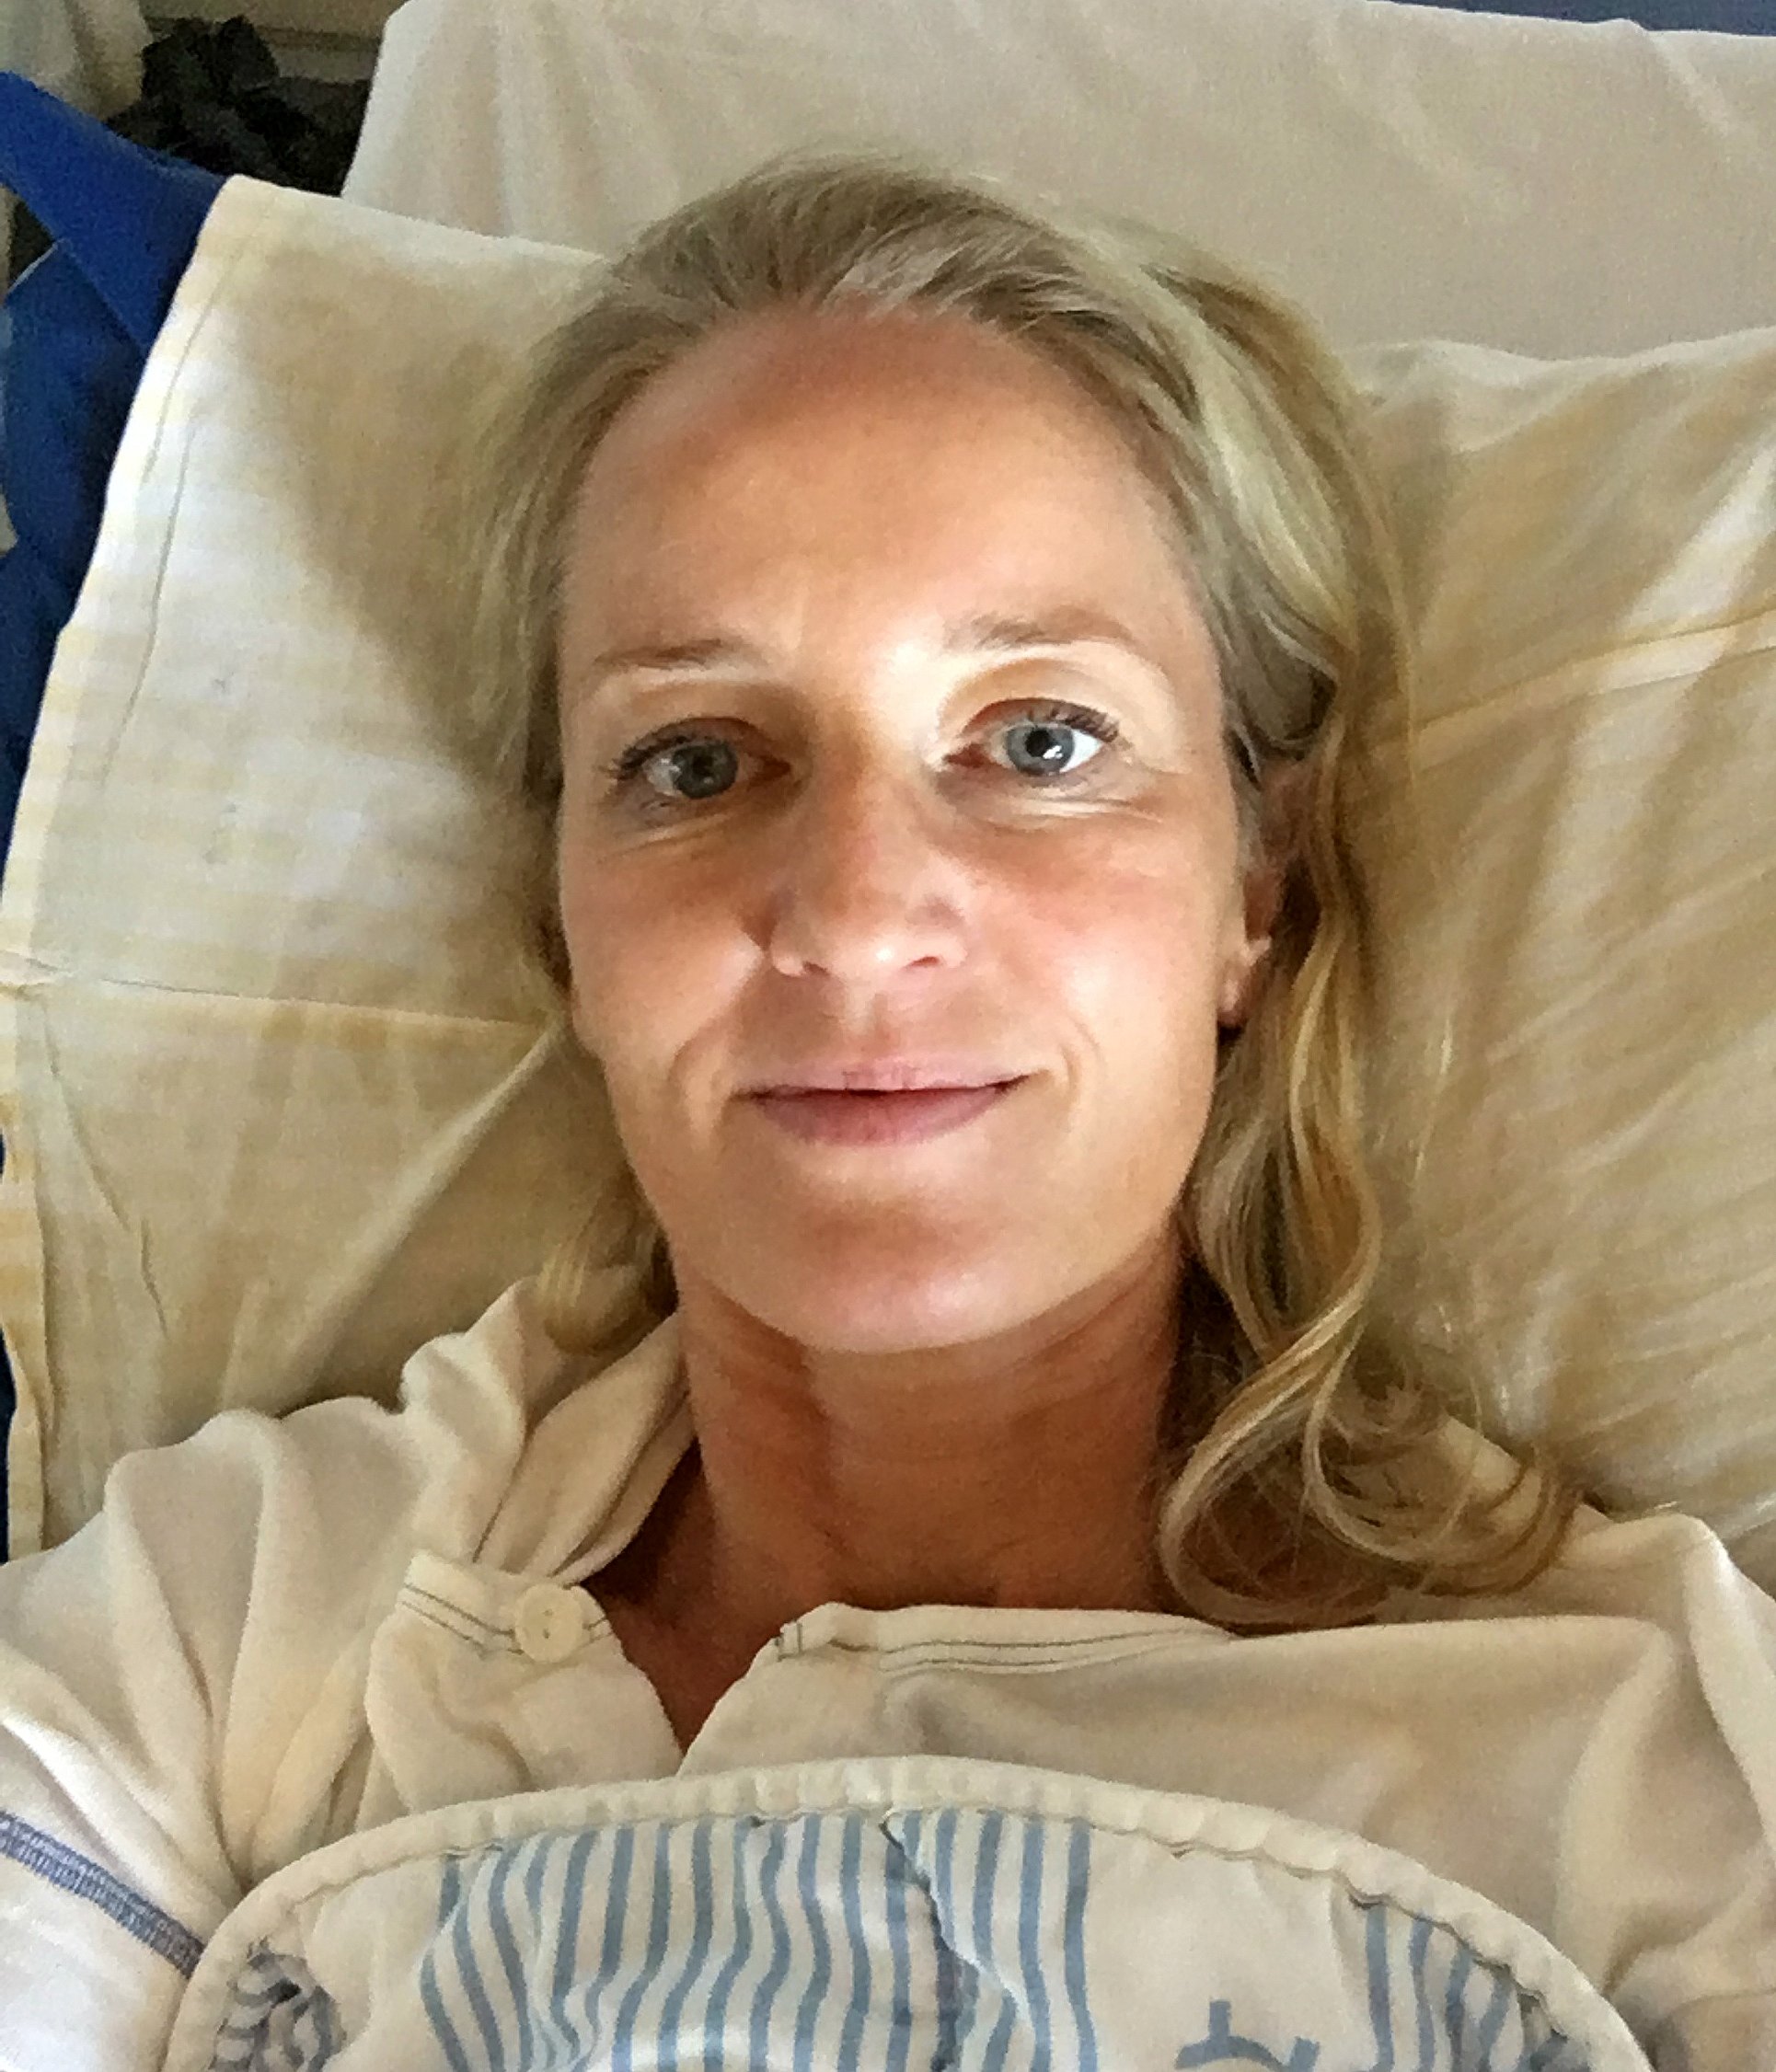 himmel Seaport udtale Blod i afføringen fik 43-årig til at reagere - og det reddede hendes liv |  TV2 ØSTJYLLAND